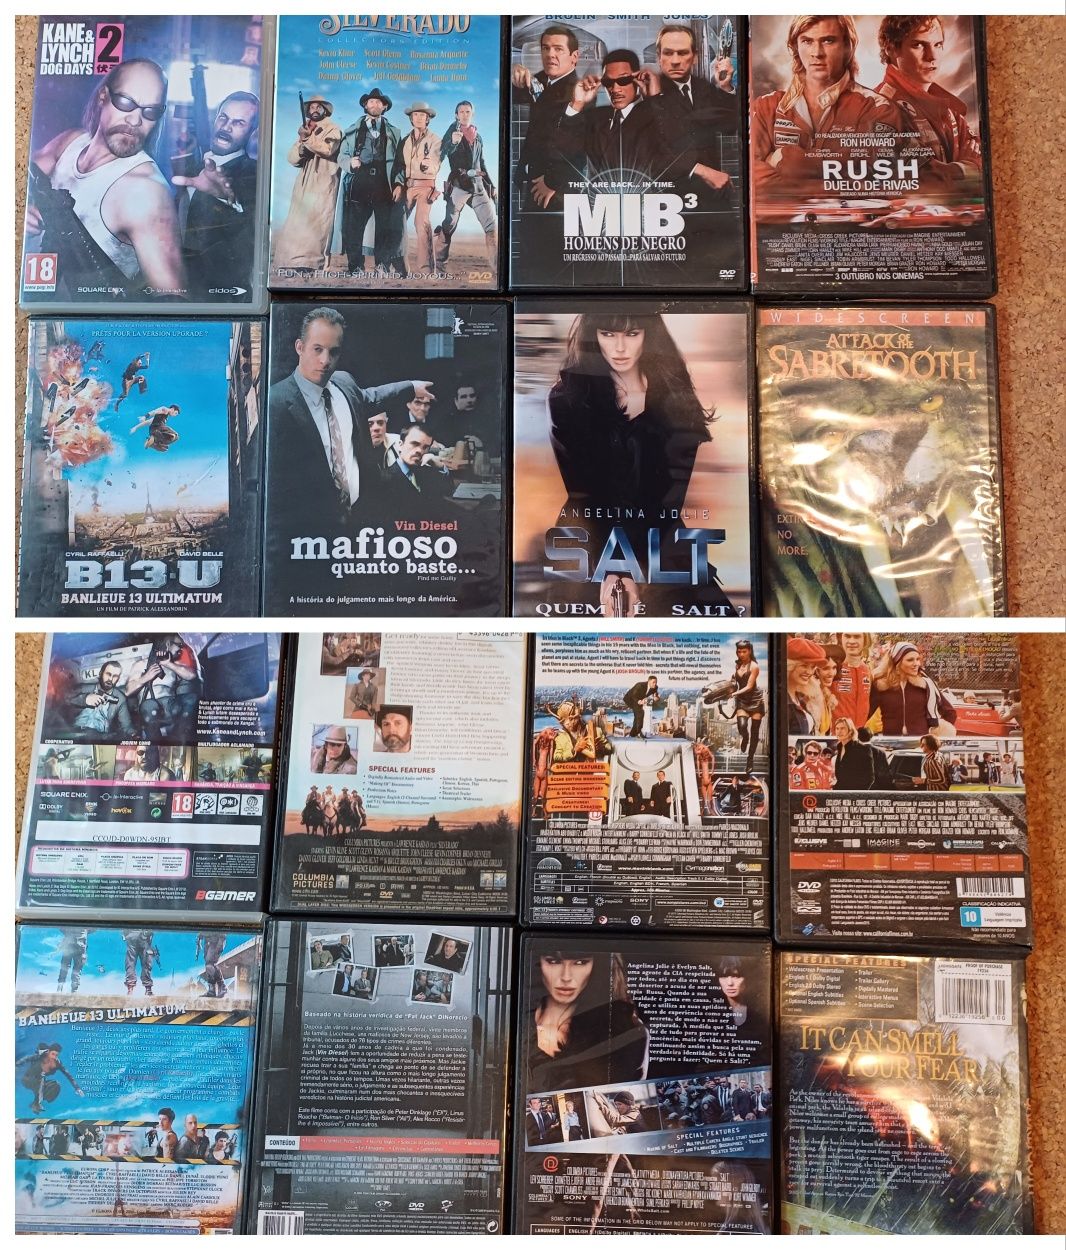 filmes / DVD s, 40 diferentes, bom estado, vendo lote ou unidade